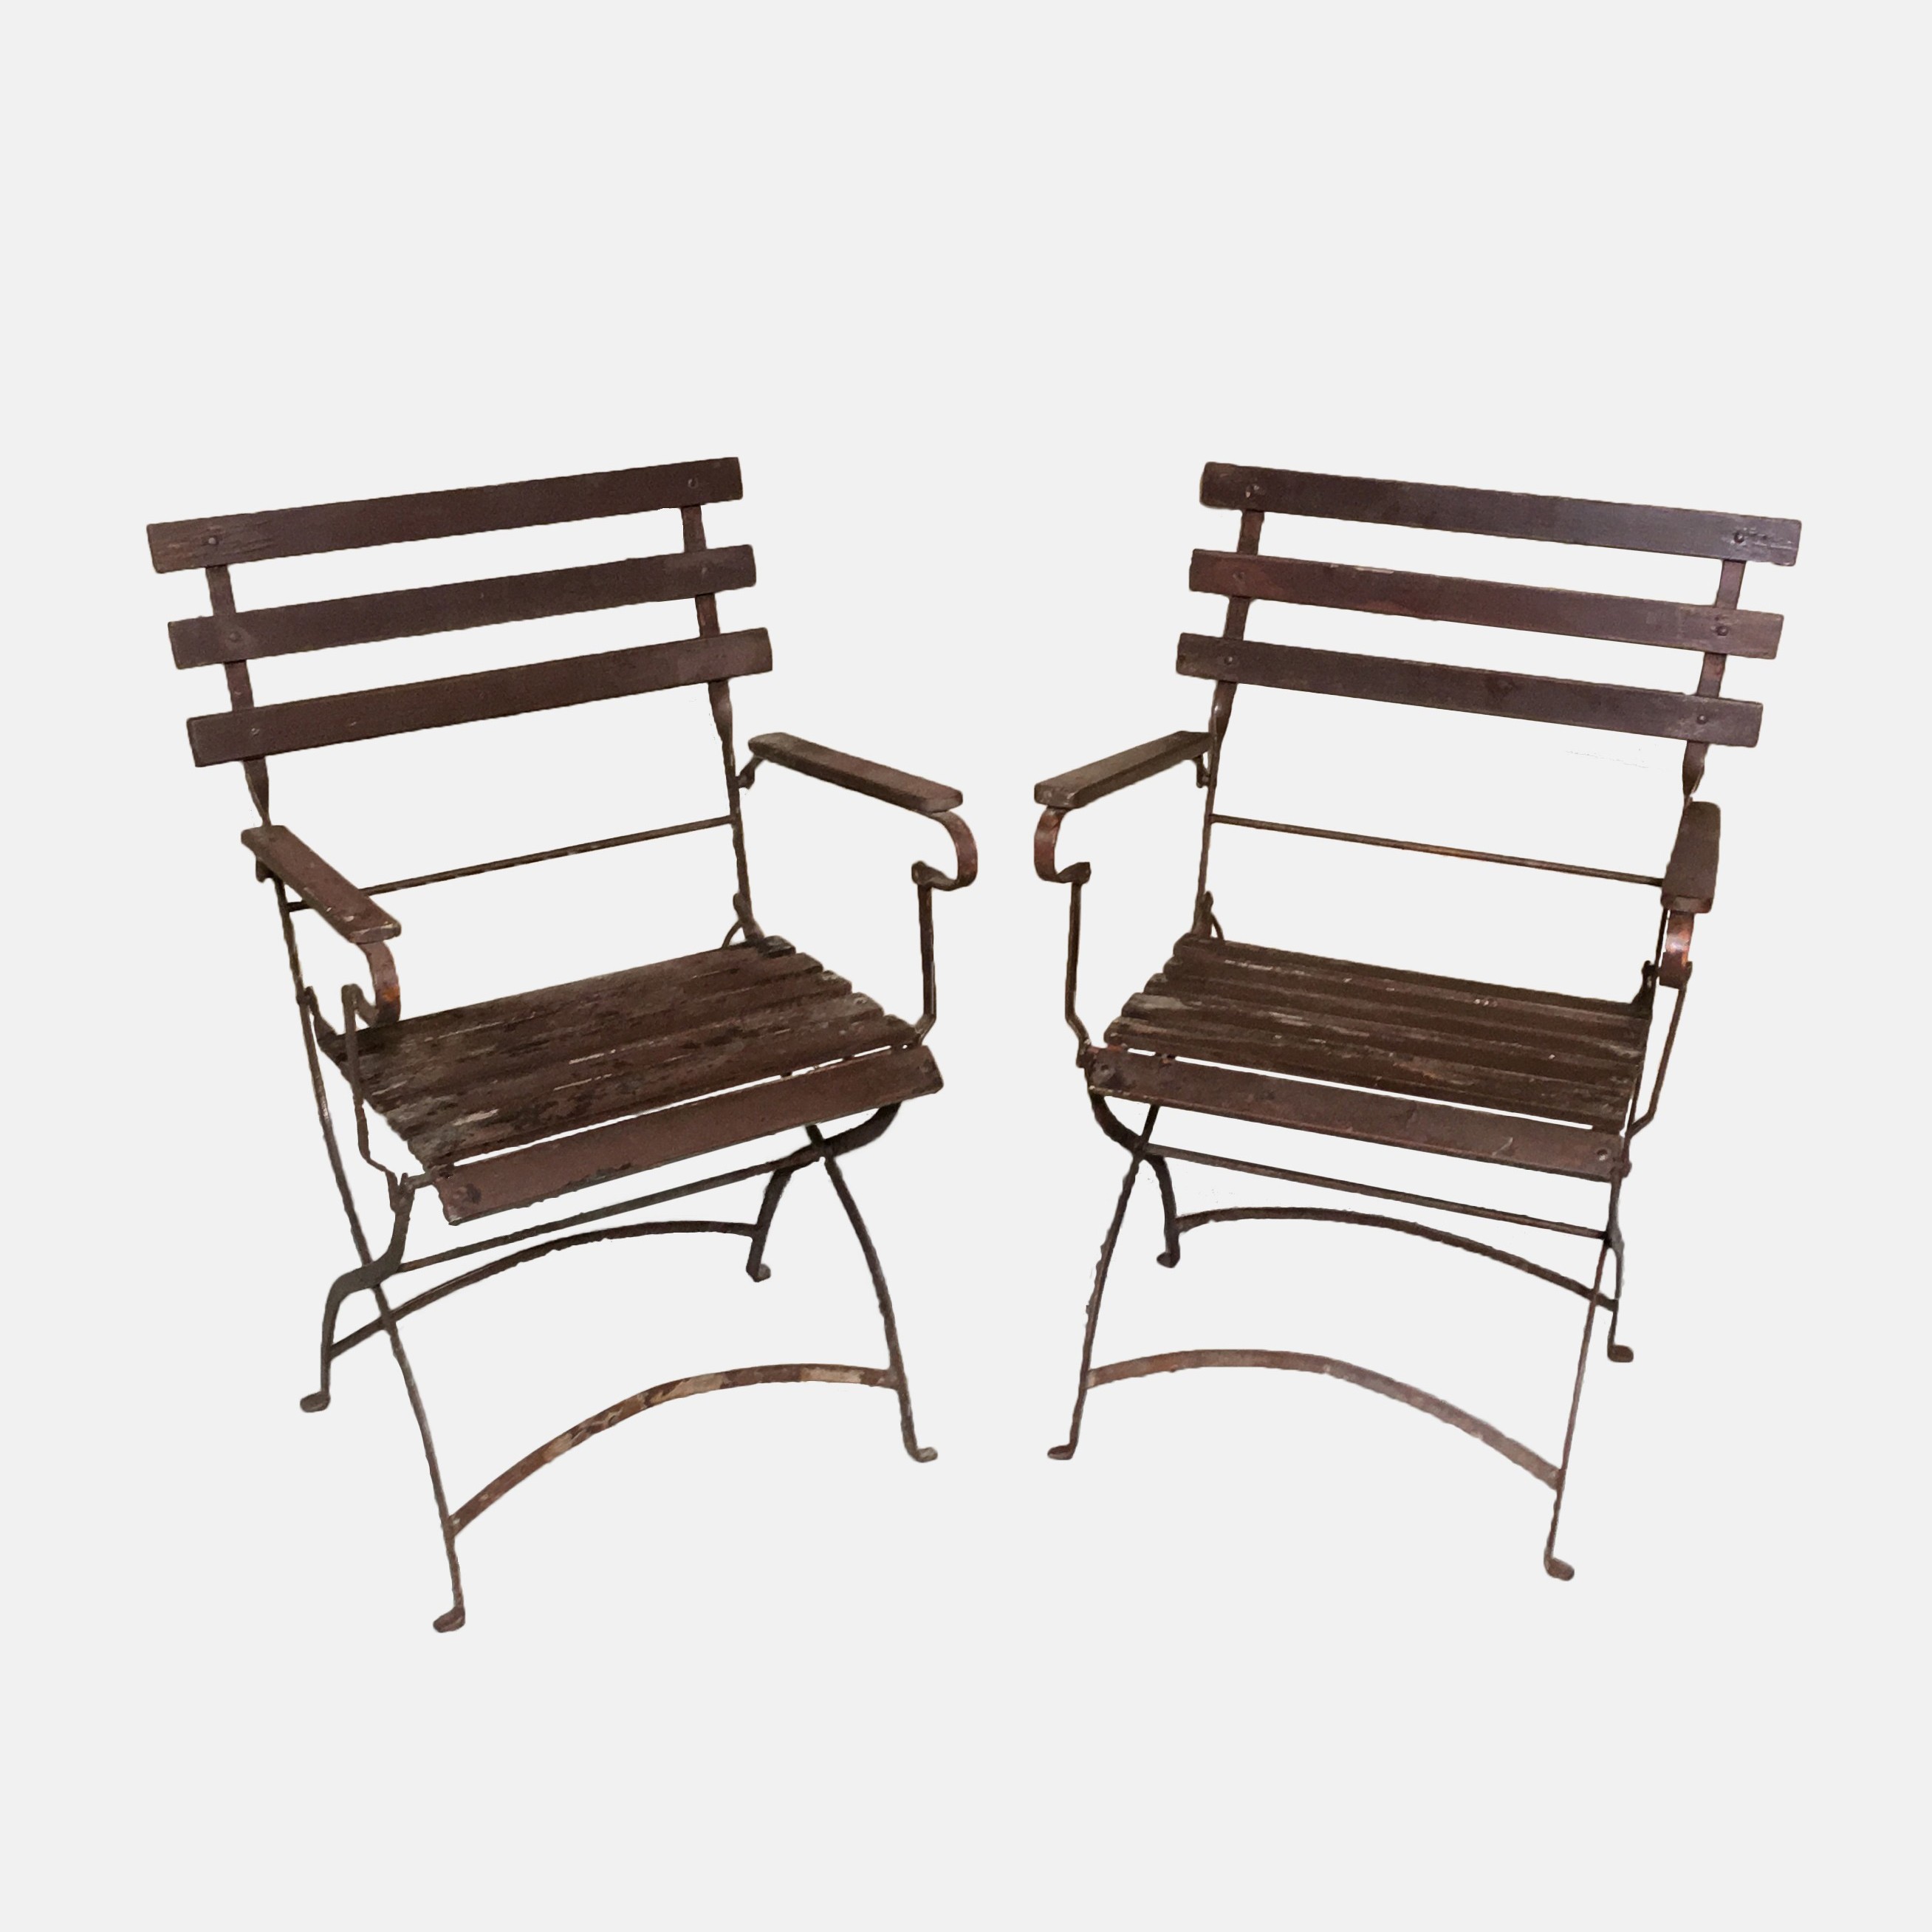 Lezen Dicteren conjunctie Pair french bistro chairs | www.ClaudiaCollections.com